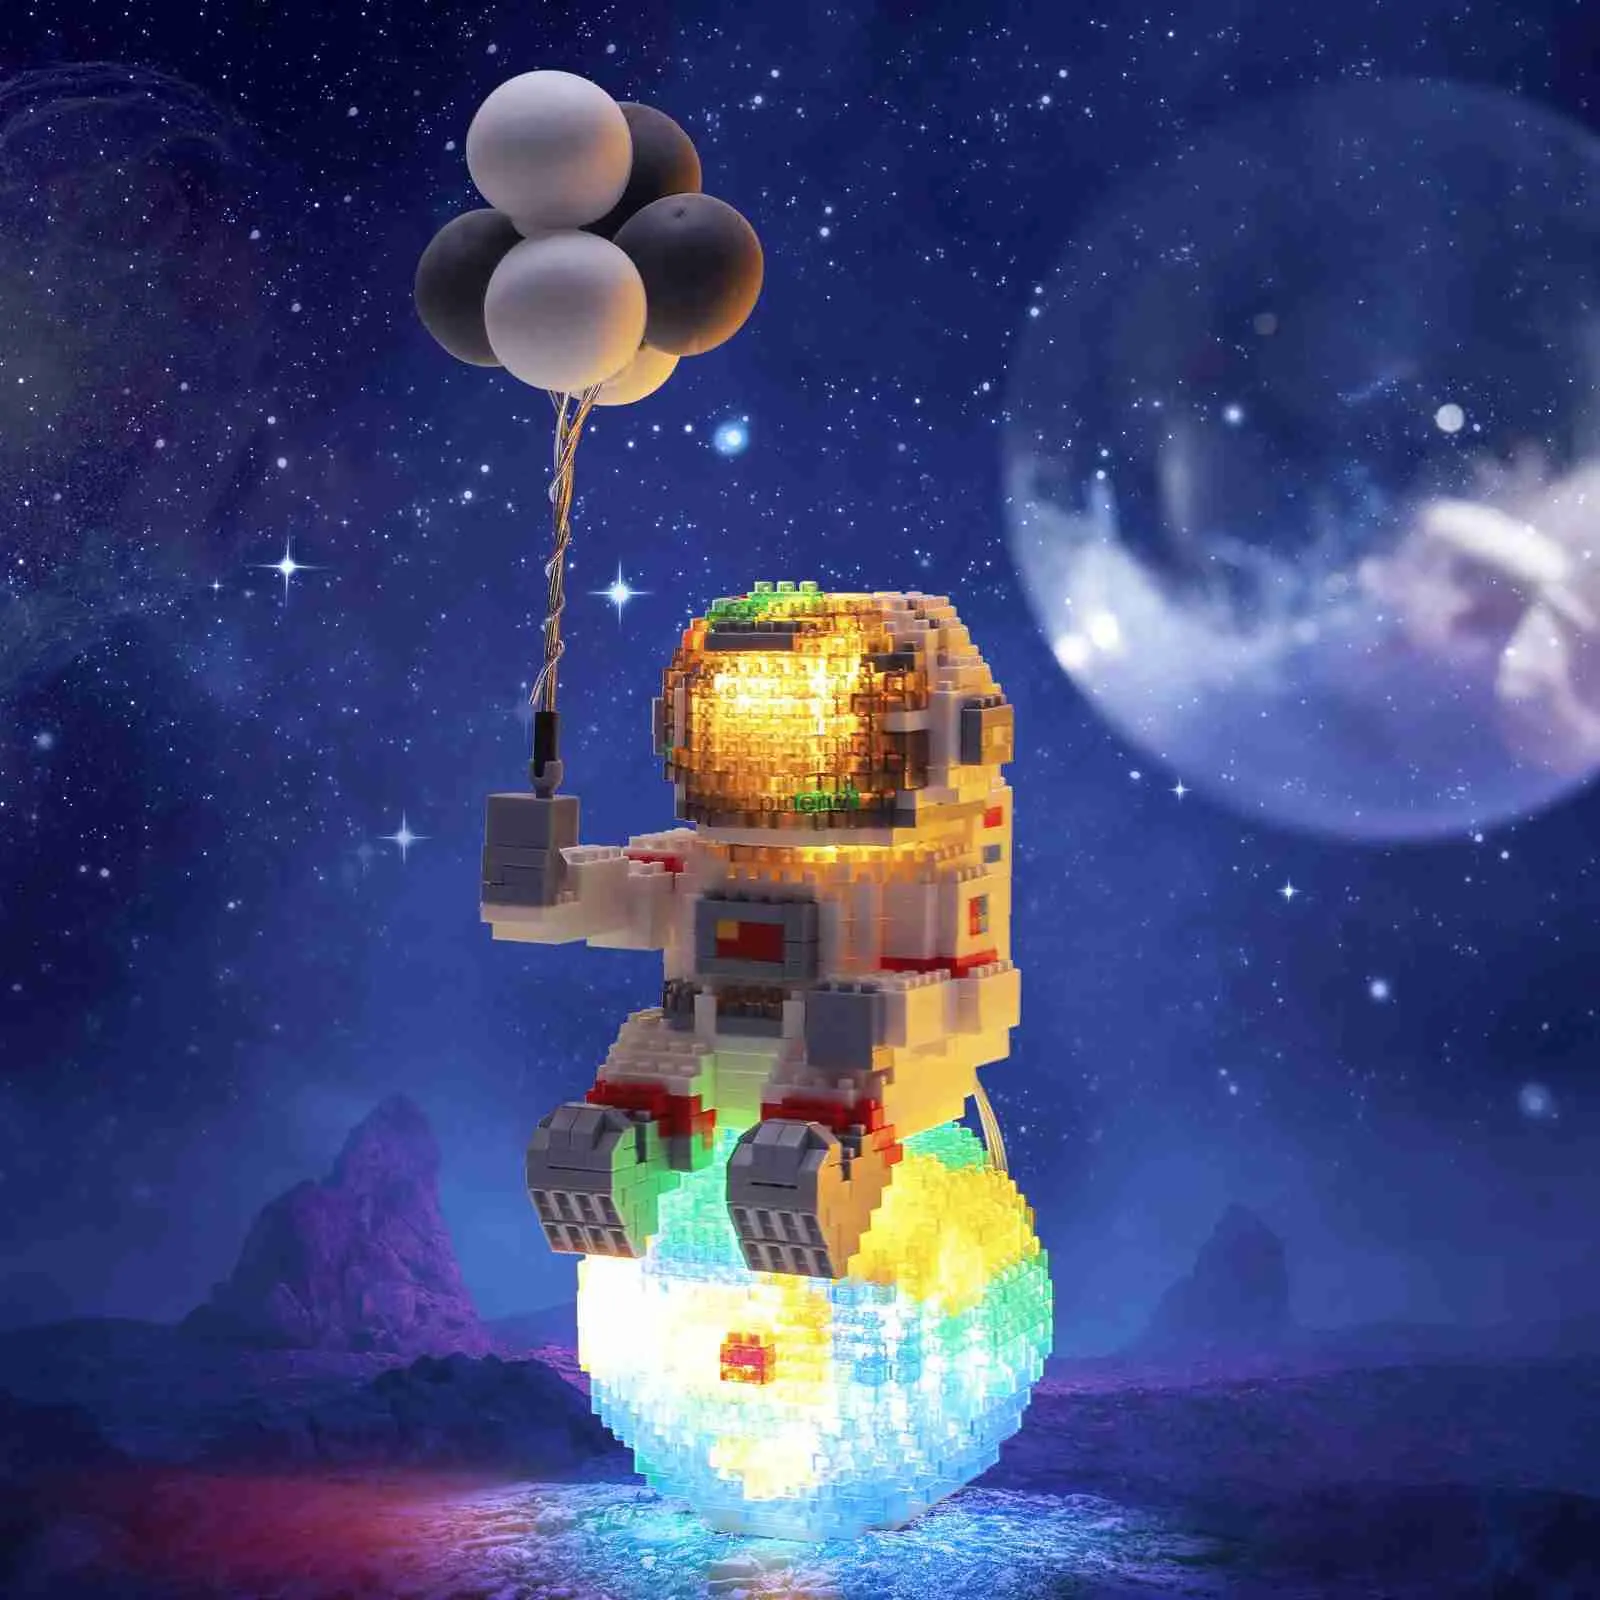 ブロック宇宙飛行士ビルディングブロックは軽いマイクロスペースムーンアースダイヤモンドディーおもちゃレンガコンストラクターおもちゃを友達男の子の女の子ギフト用